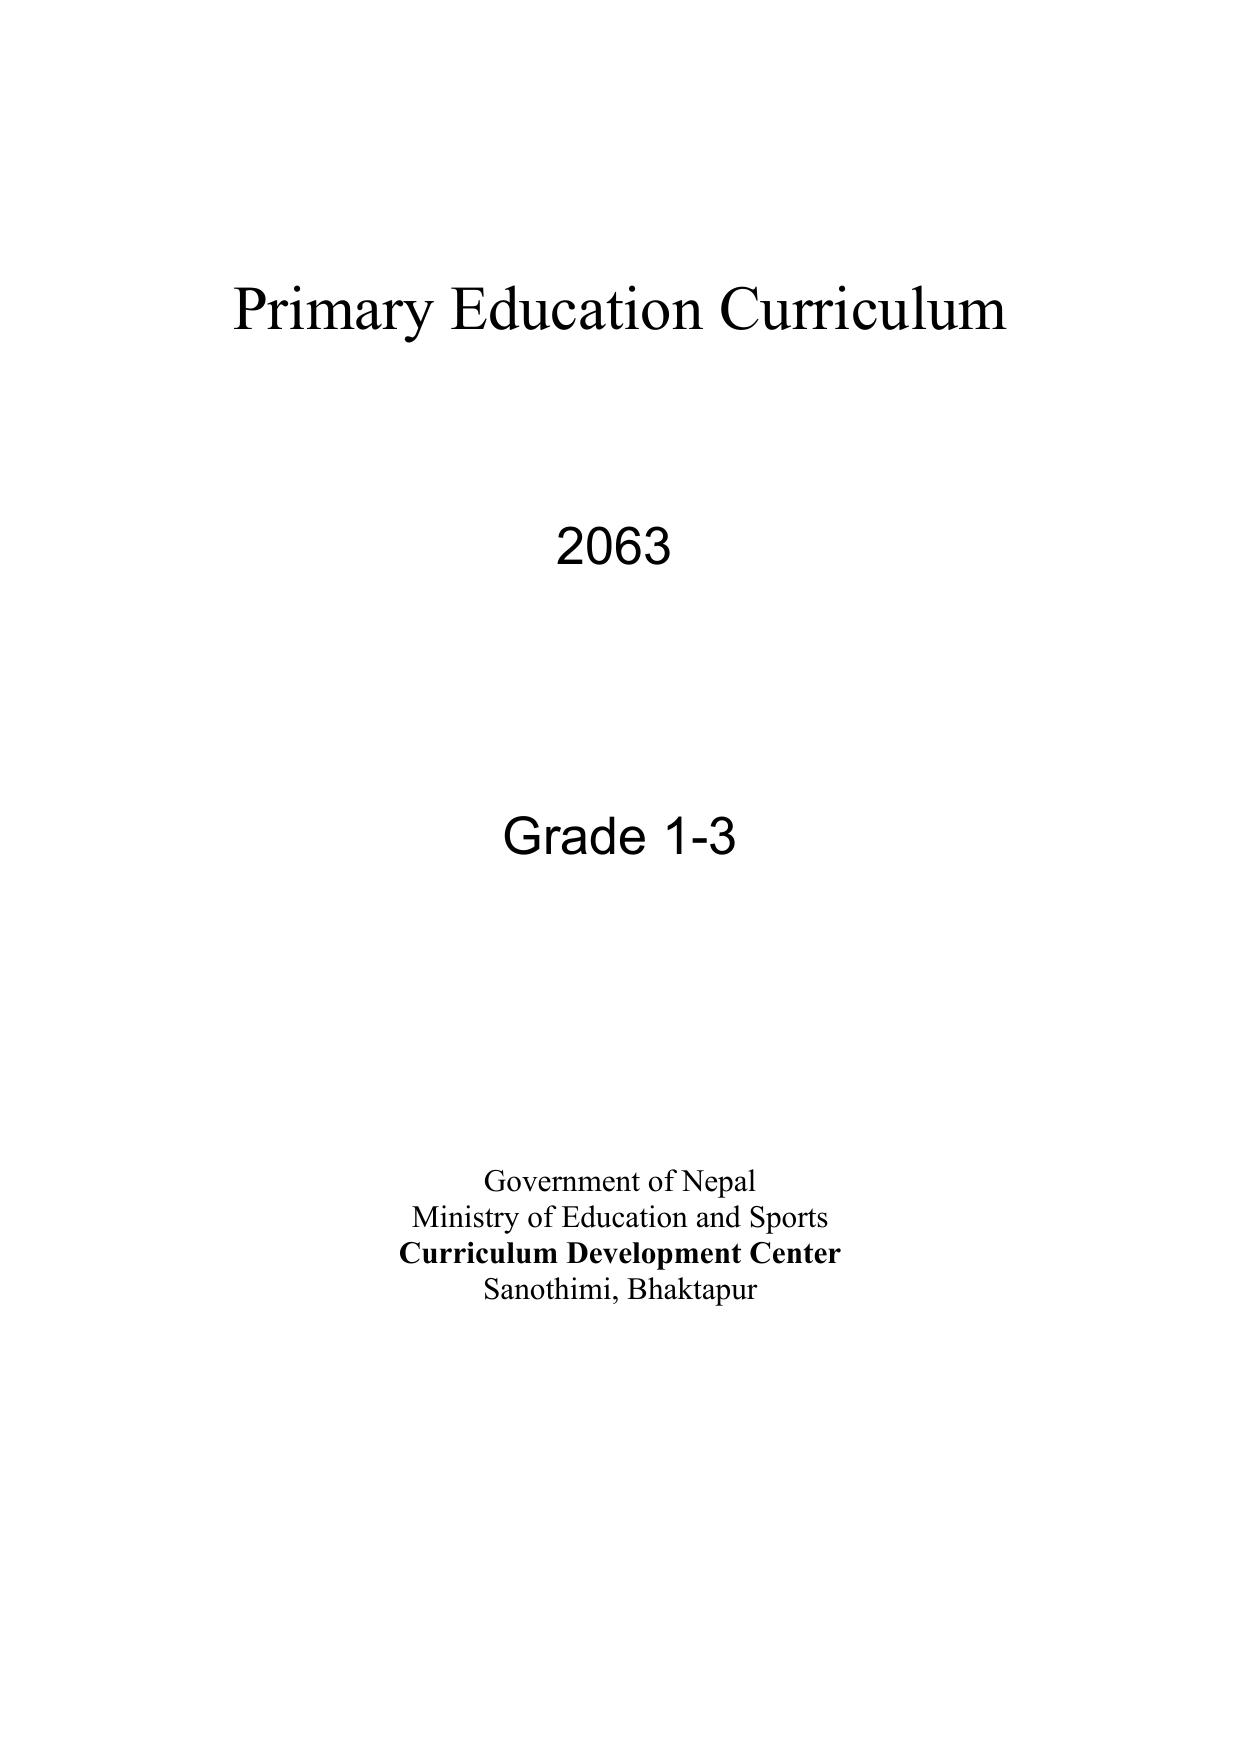 Primary Education Curriculum 2063